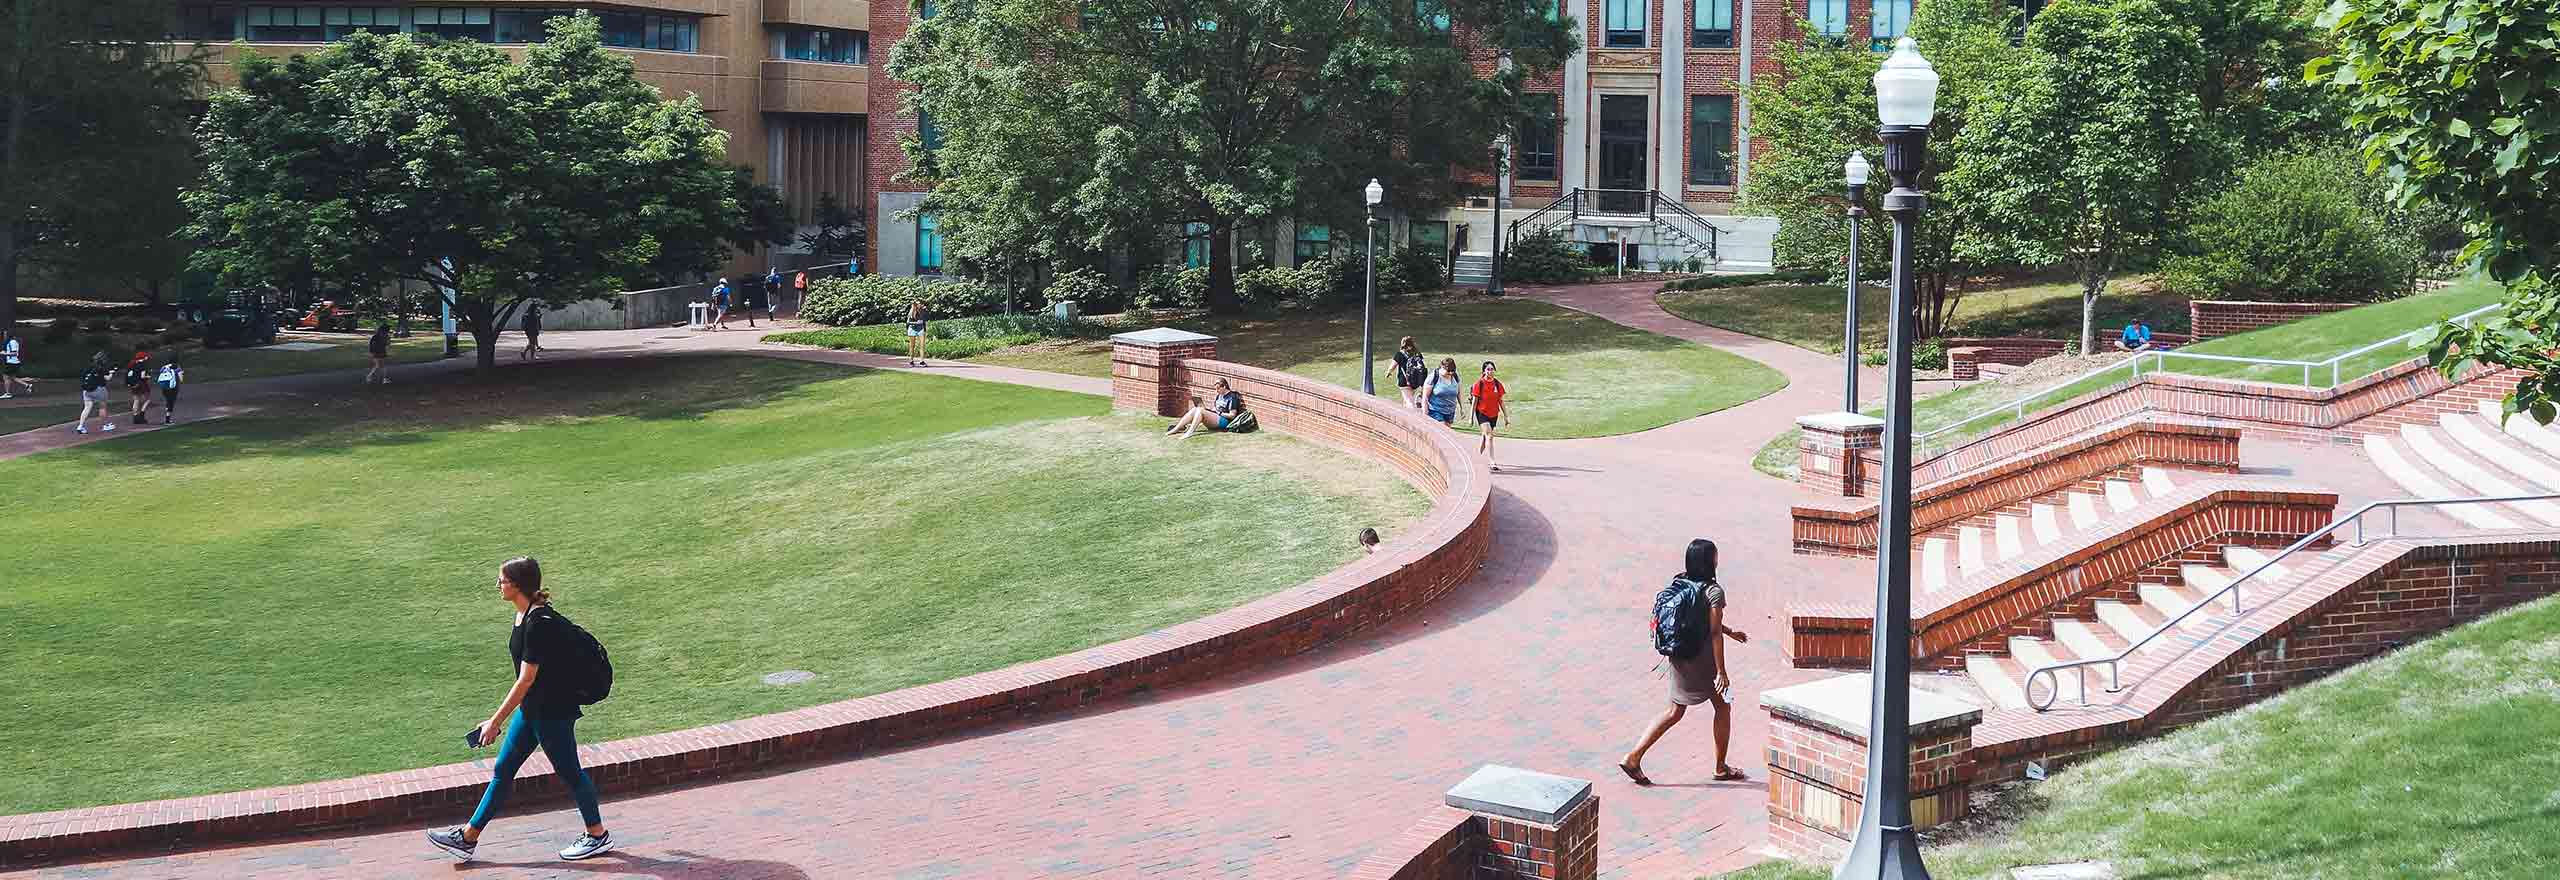 Studenti a passeggio nel campus